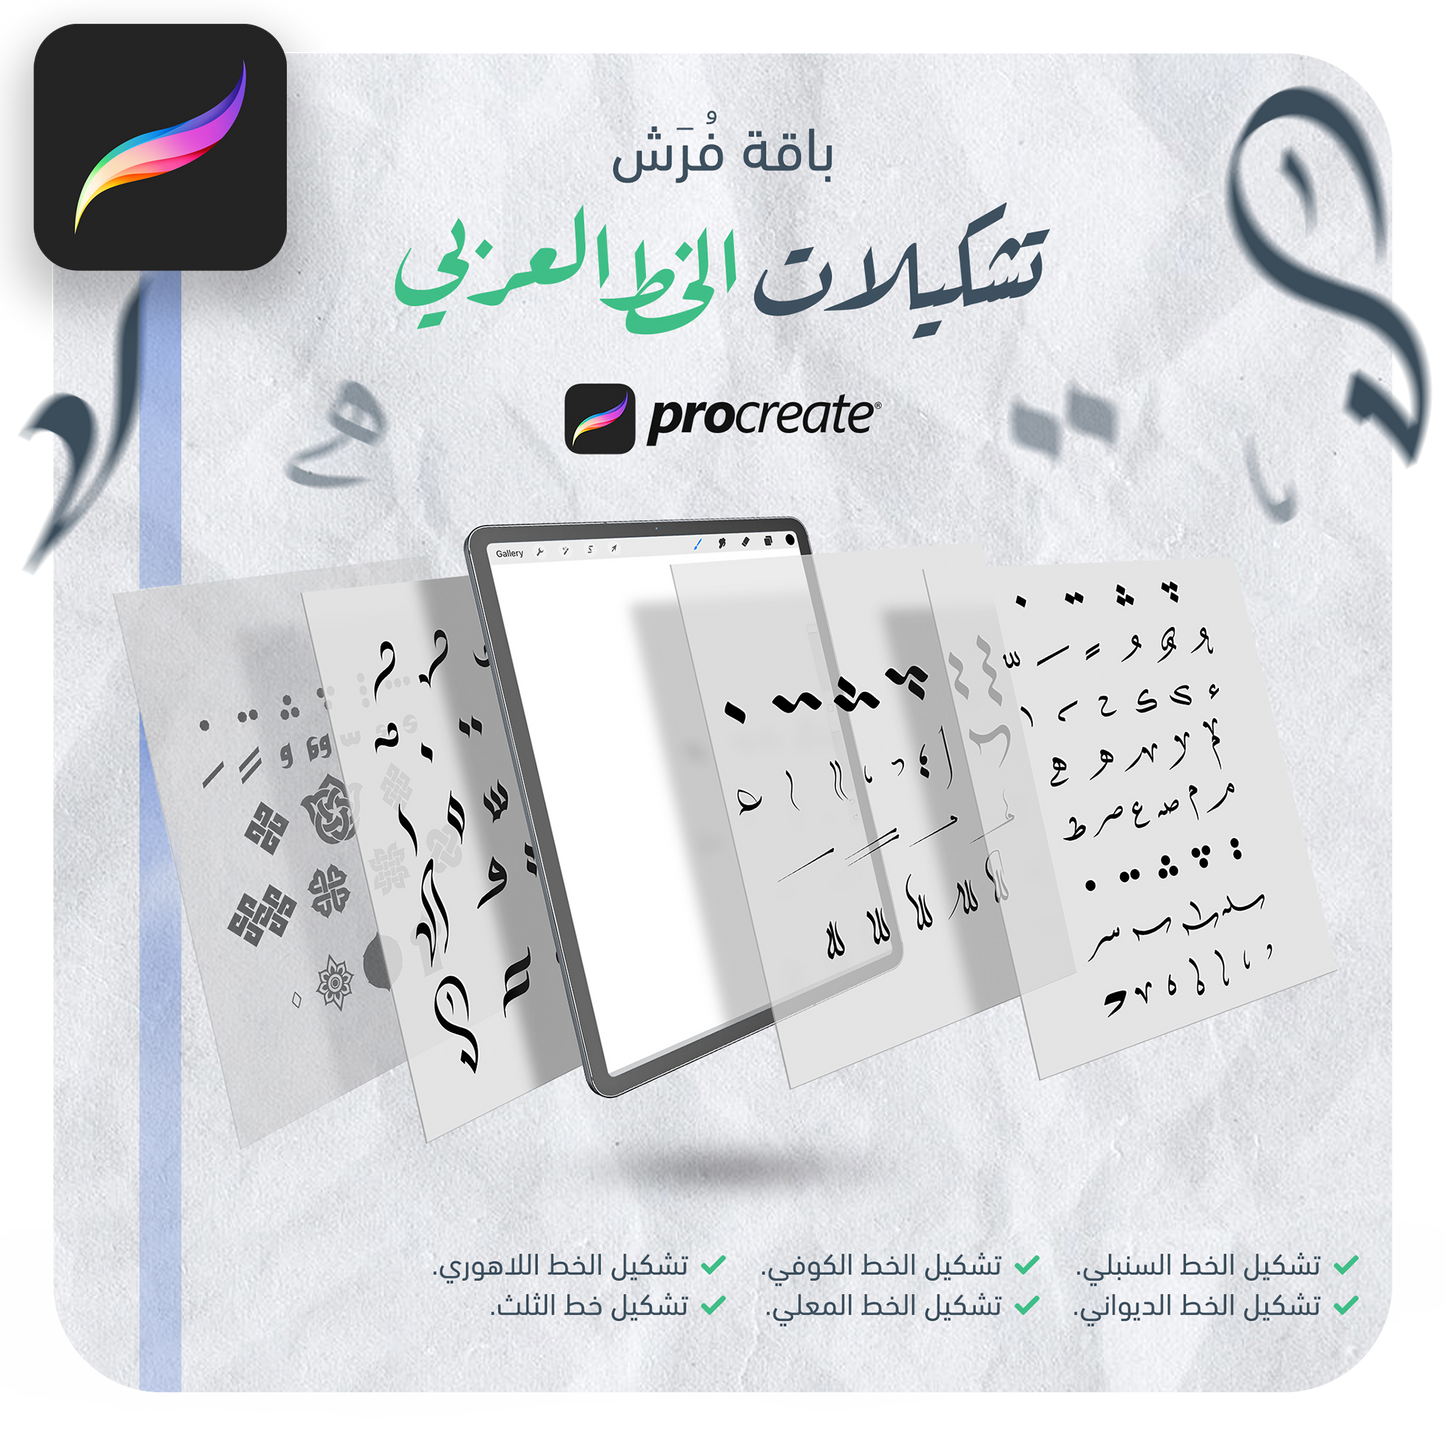 فرش تشكيلات الخط عربي تعمل على تطبيق بروكريت عبر الآيباد مقدمة من متجر آرت سلة